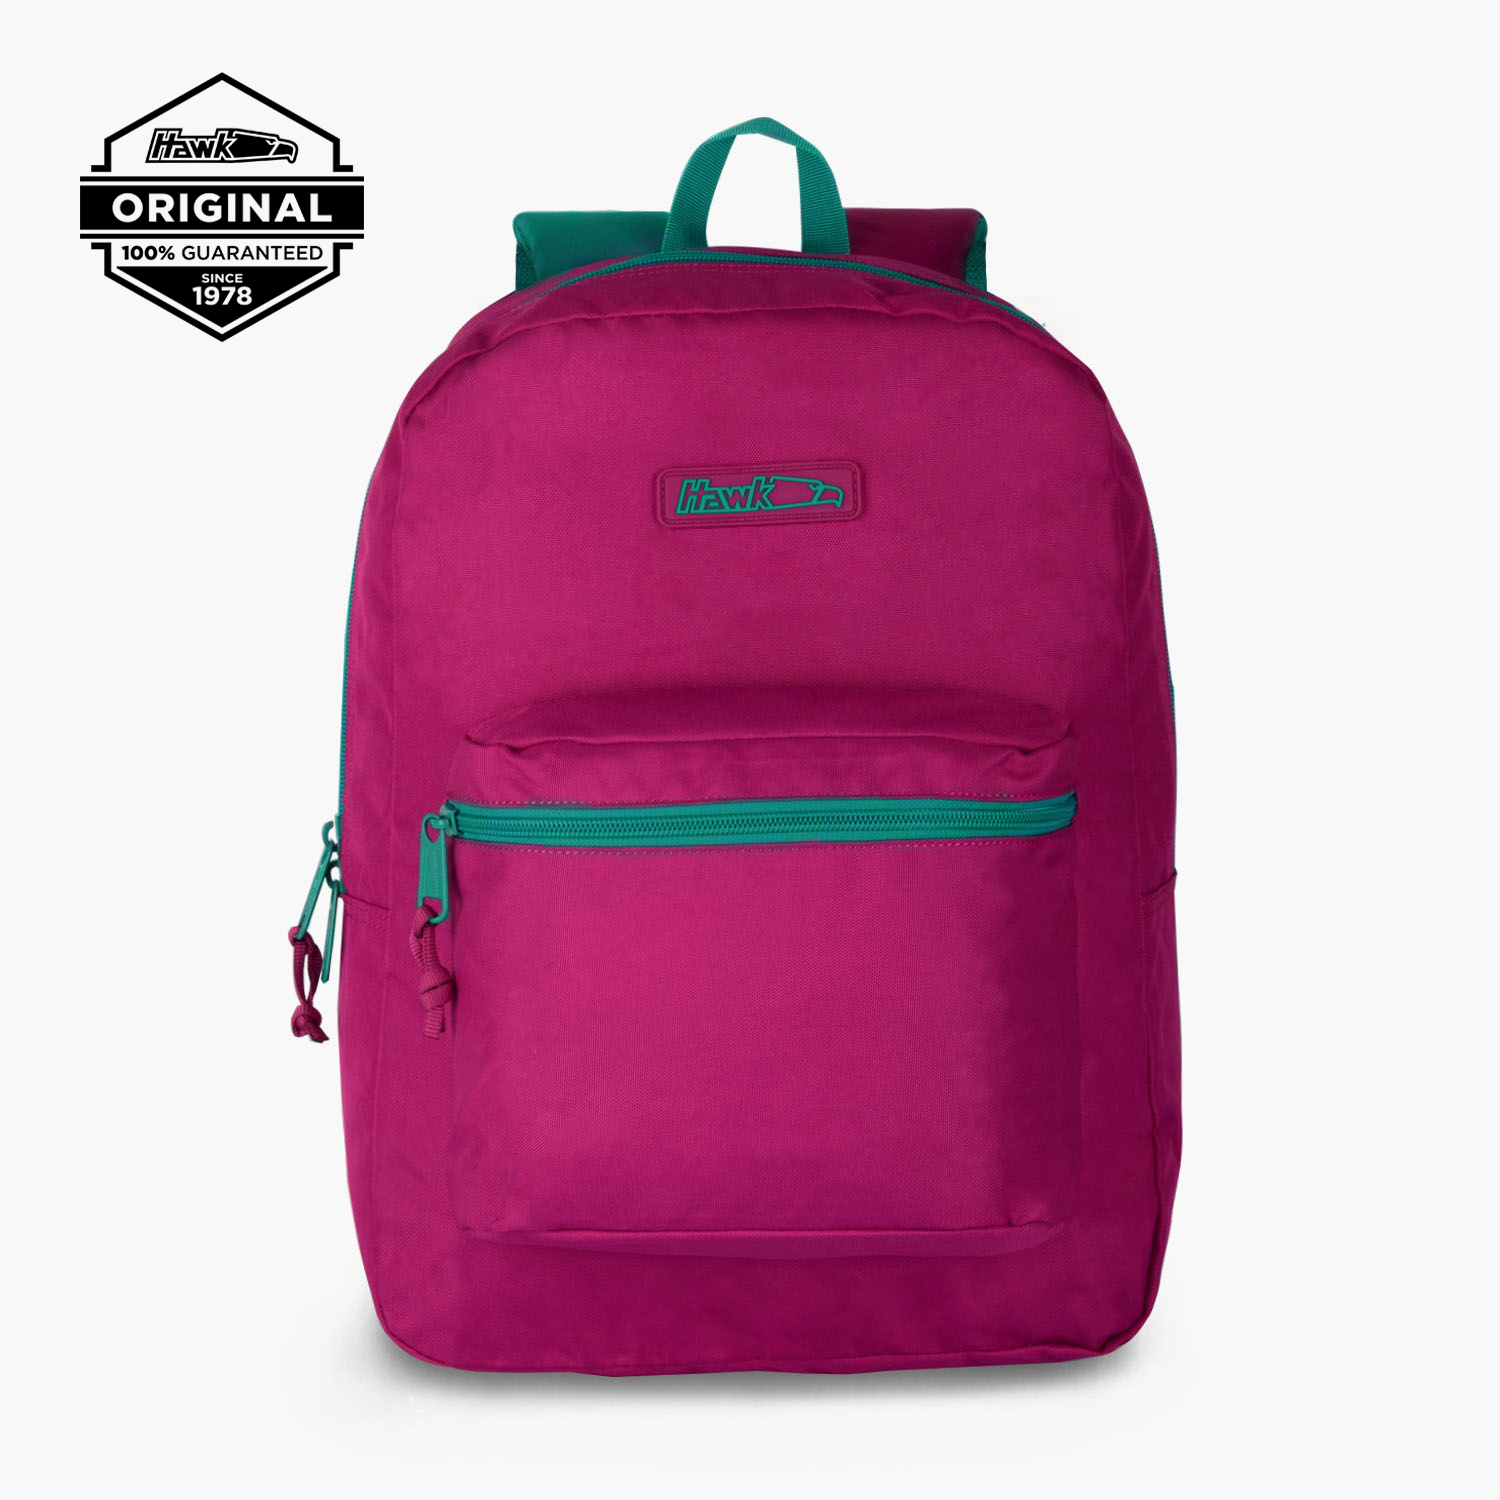 kånken 17 laptop backpack review